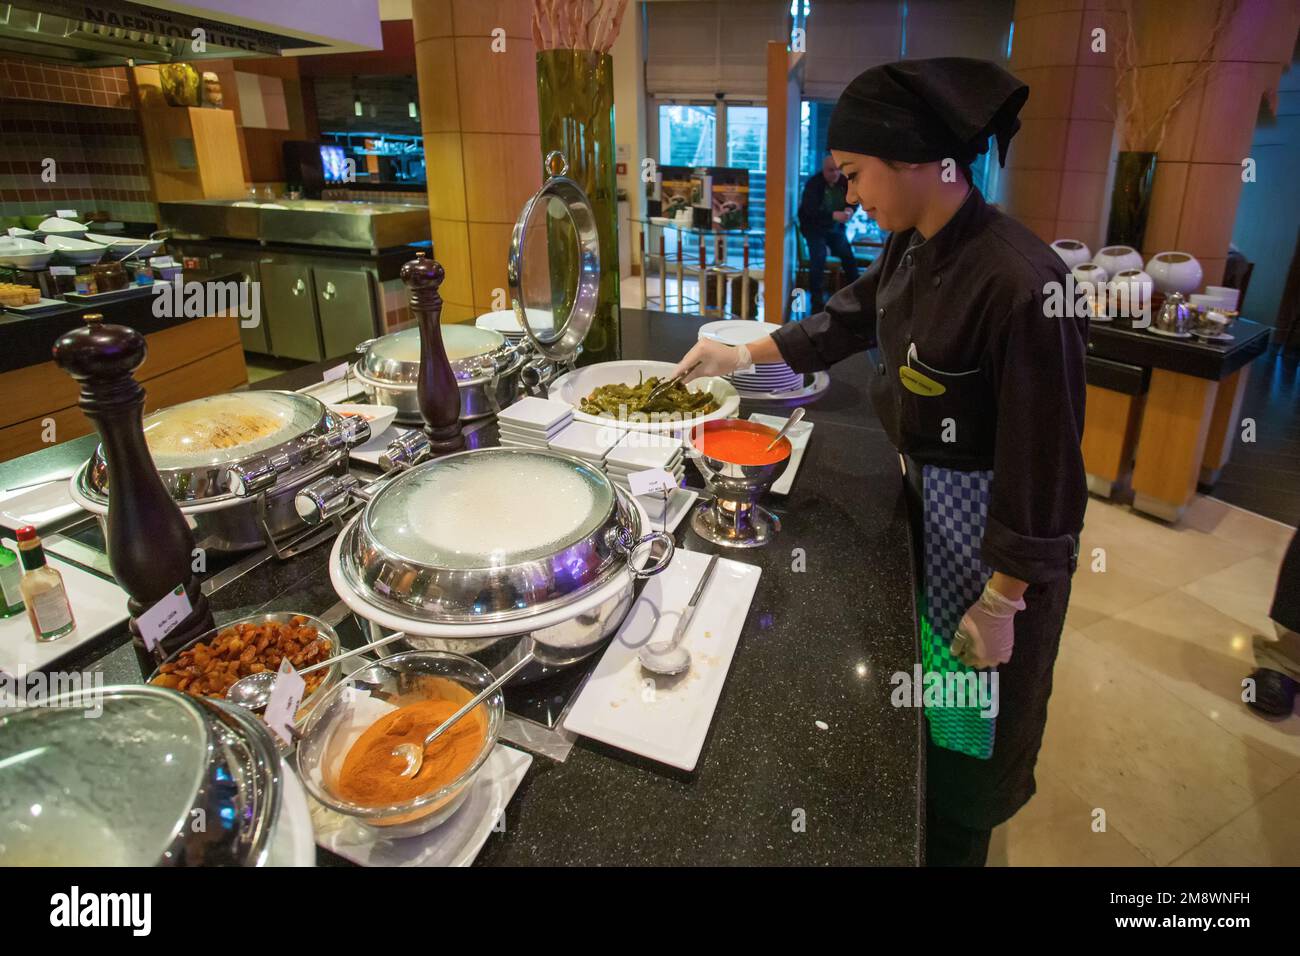 01-20-2015 Istanbul , Turchia. Un dipendente della sala ristorazione sta migliorando qualcosa nel posto per self-service cibo secondo il sistema a buffet in Foto Stock